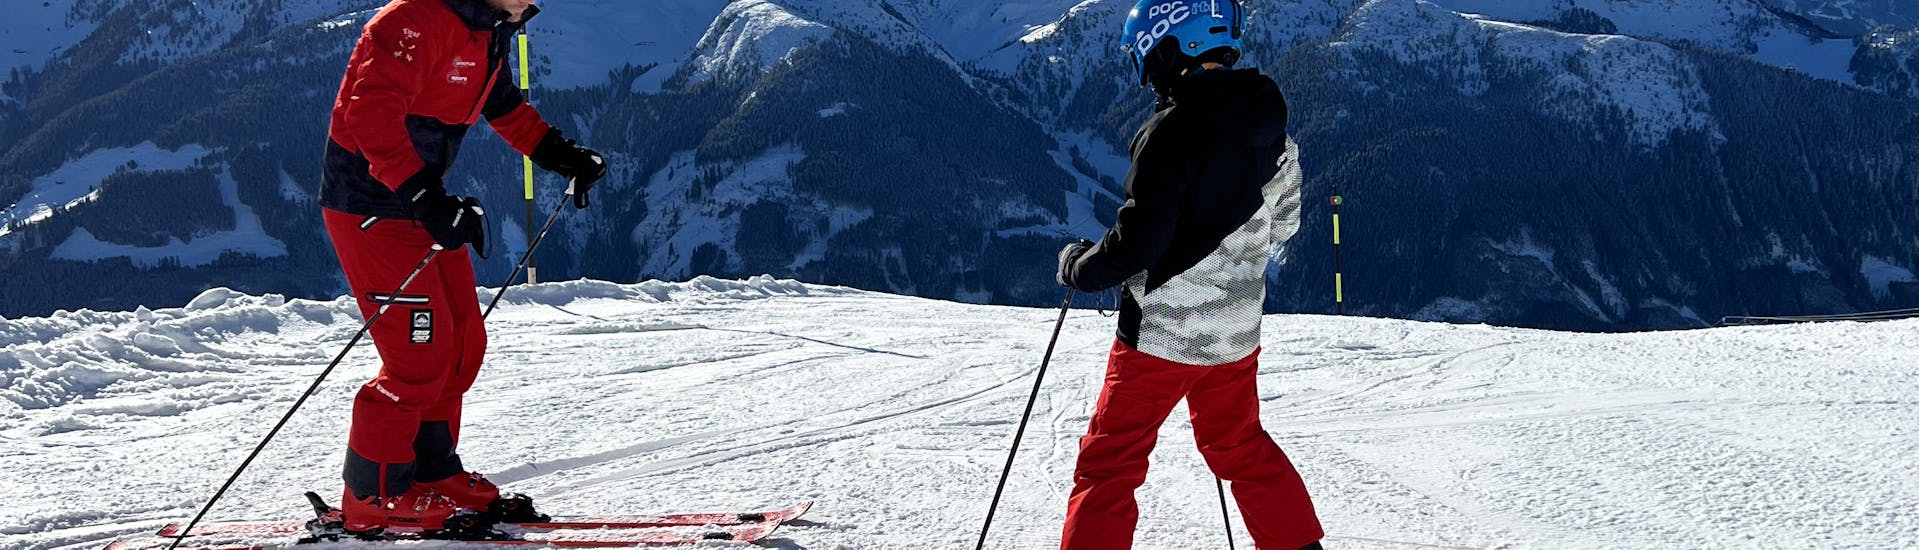 Tijdens de privéskilessen voor kinderen (vanaf 5 jaar) - alle niveaus leert een meisje skiën met behulp van schattige dierenfiguren en haar vriendelijke skileraar van de skischool Skischule Arena in Zell am Ziller.